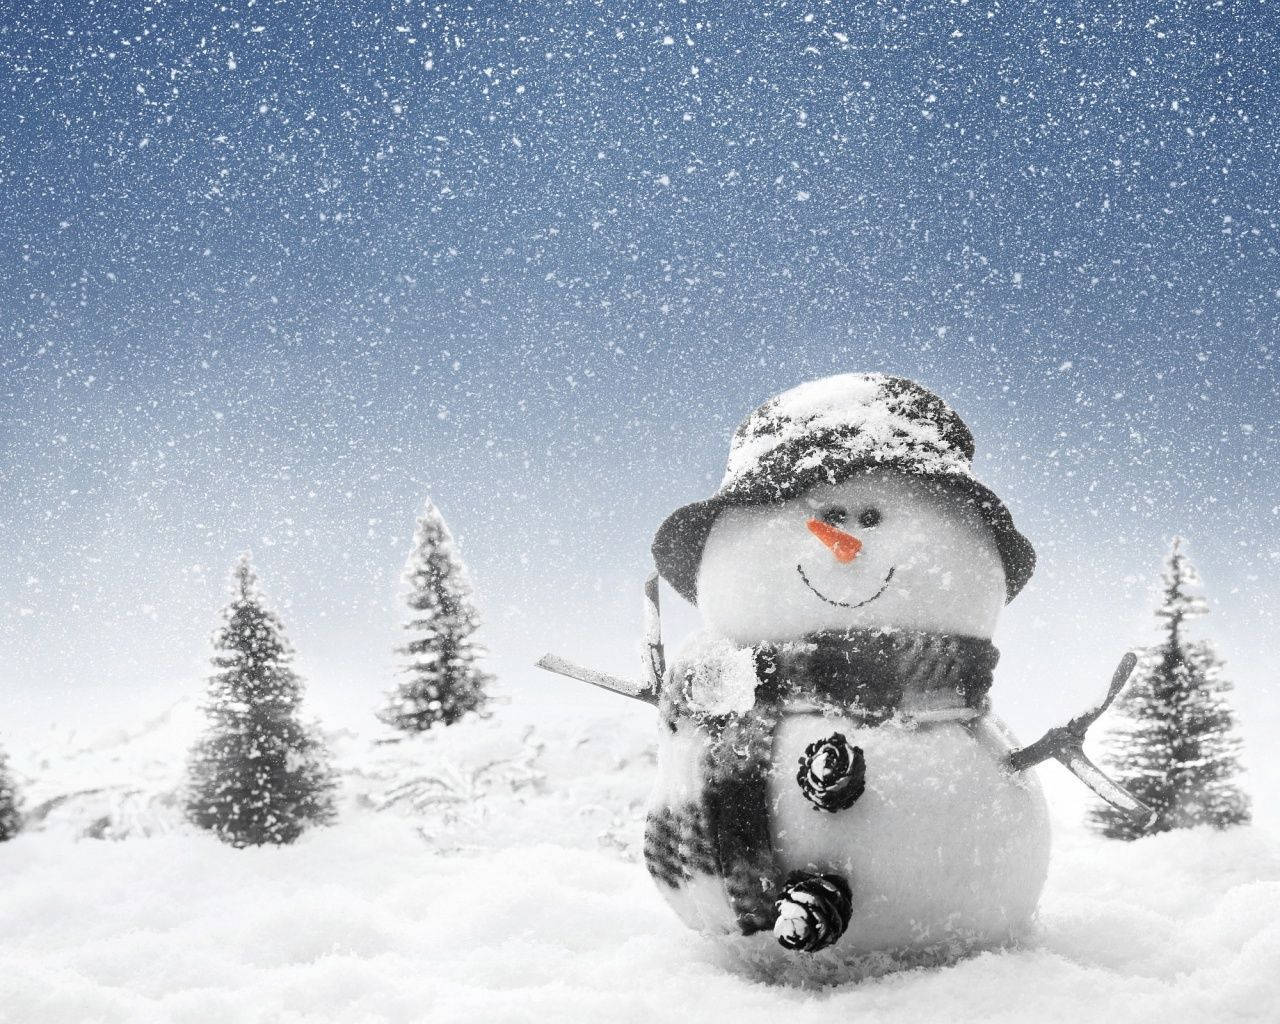 Snowman In Winter Wonderland Background